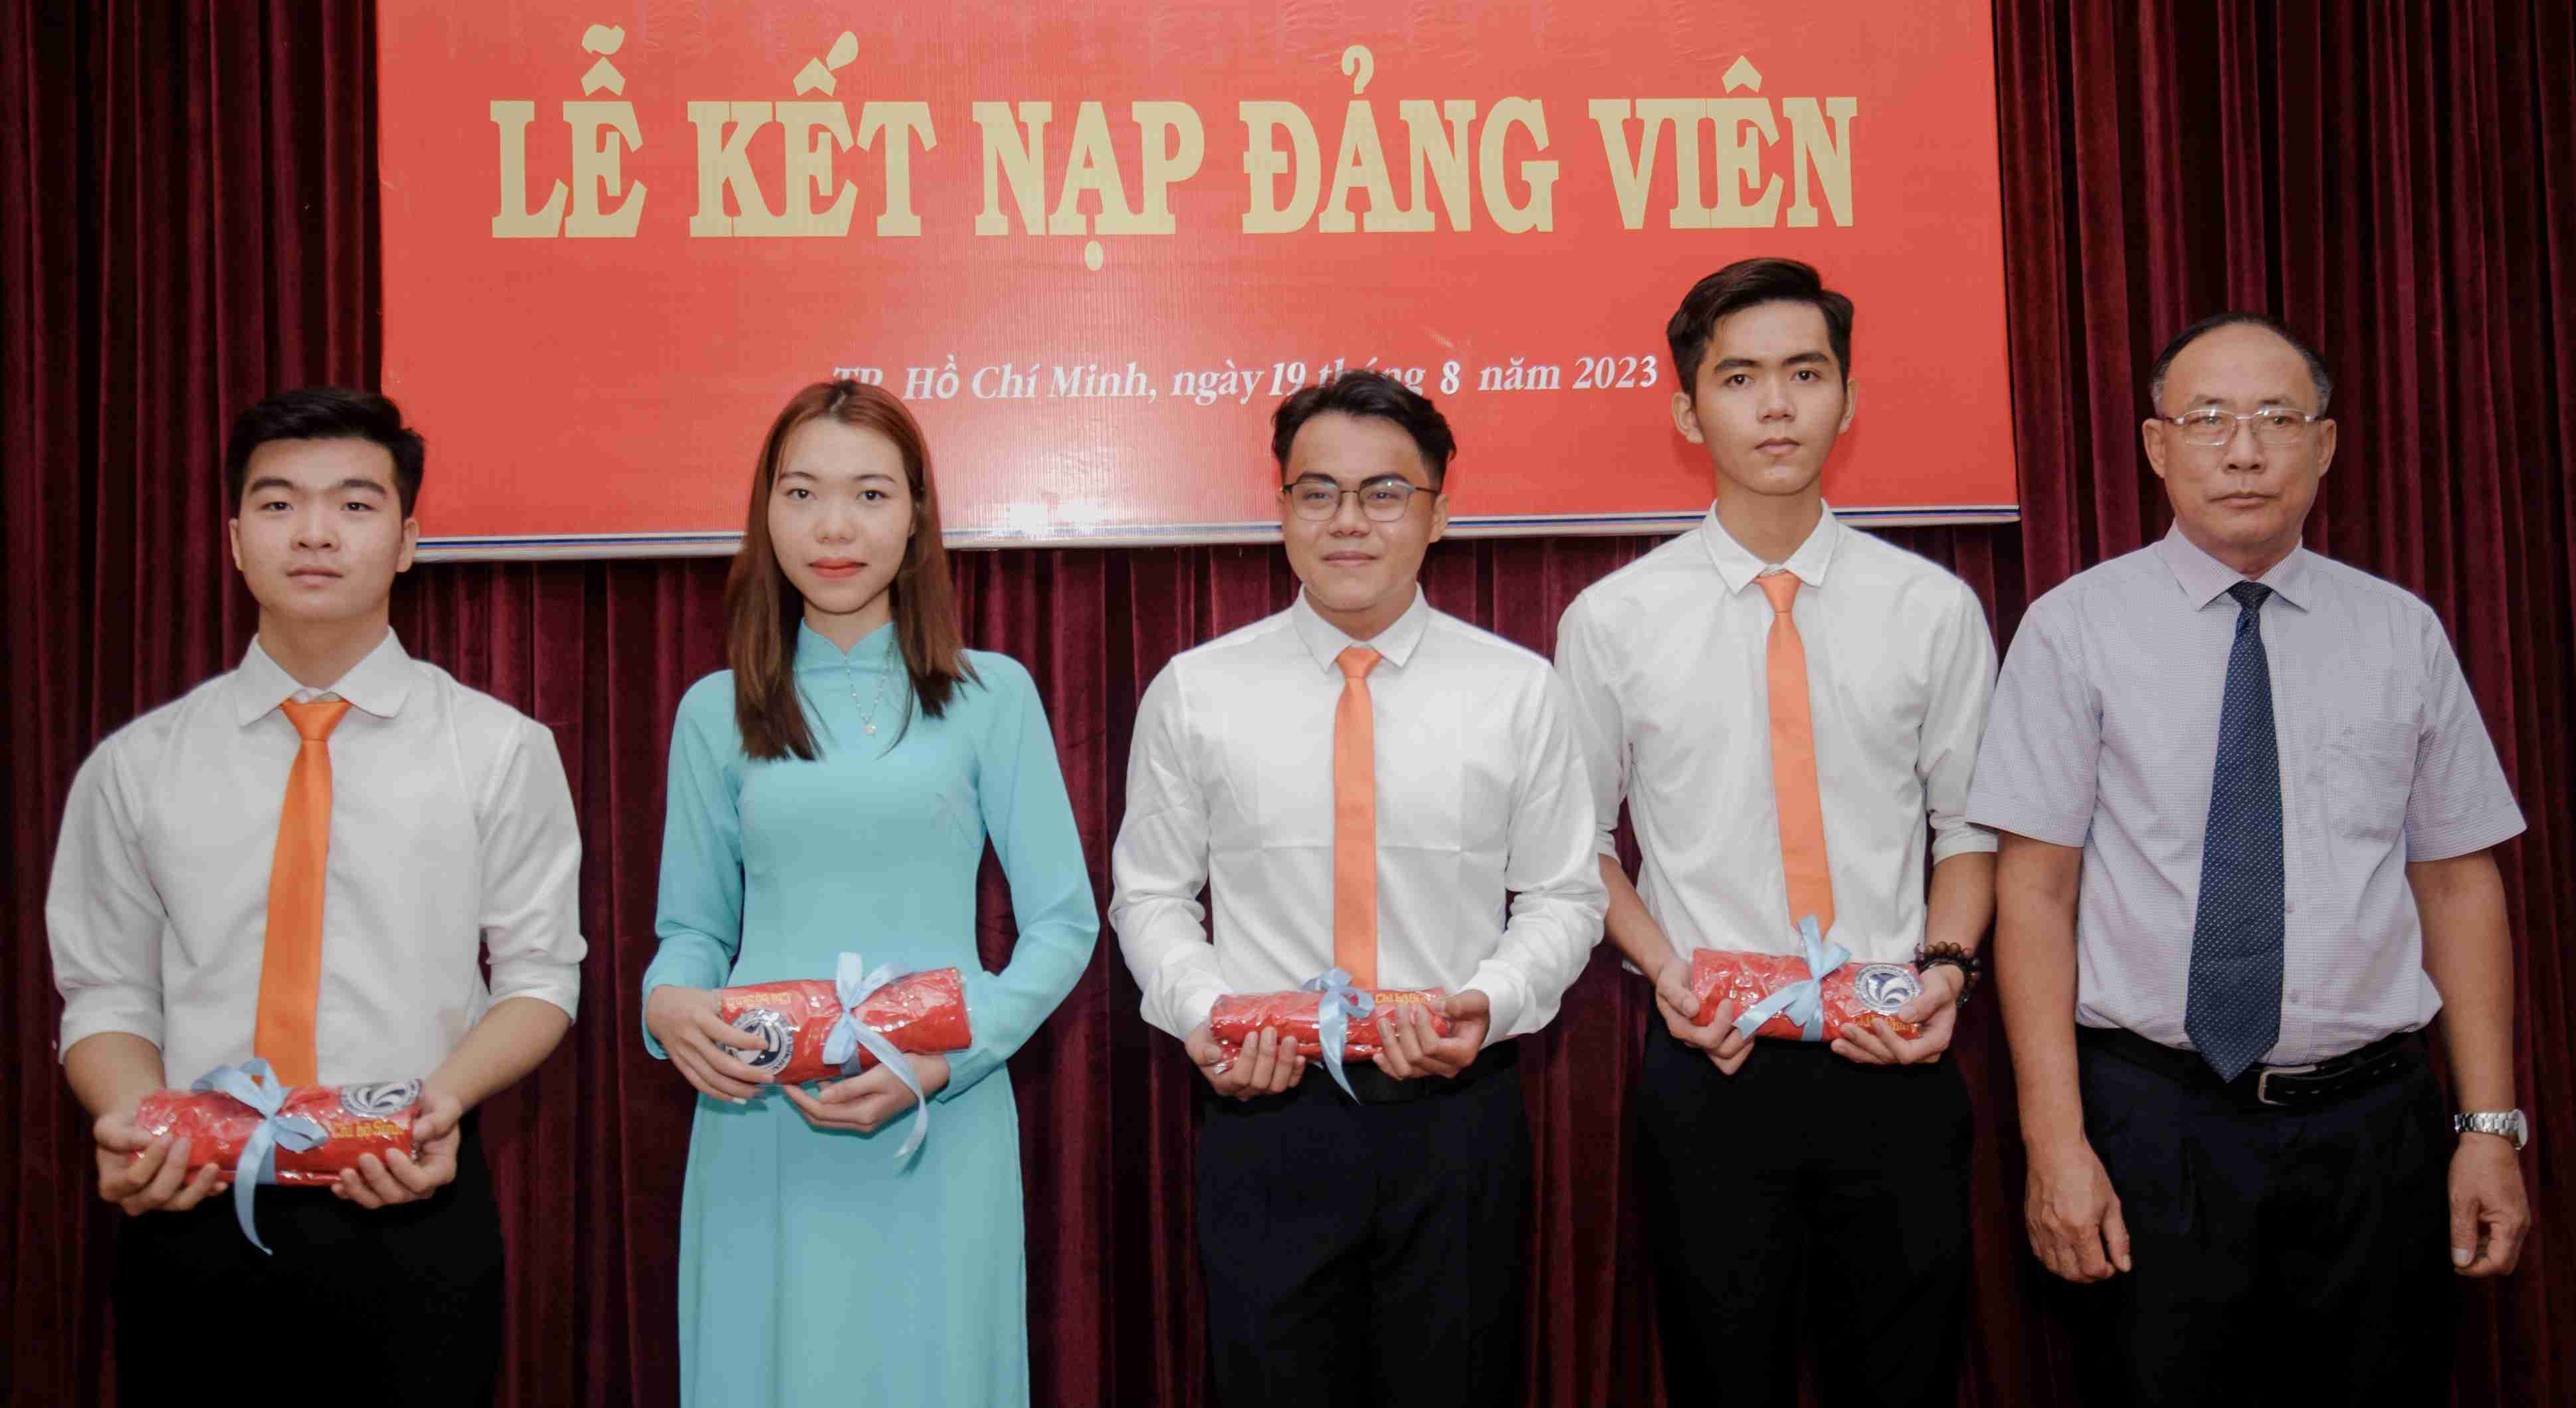 05 đảng viên mới được kết nạp vào Đảng bộ bet365 mobile bet
. Hồ Chí Minh 